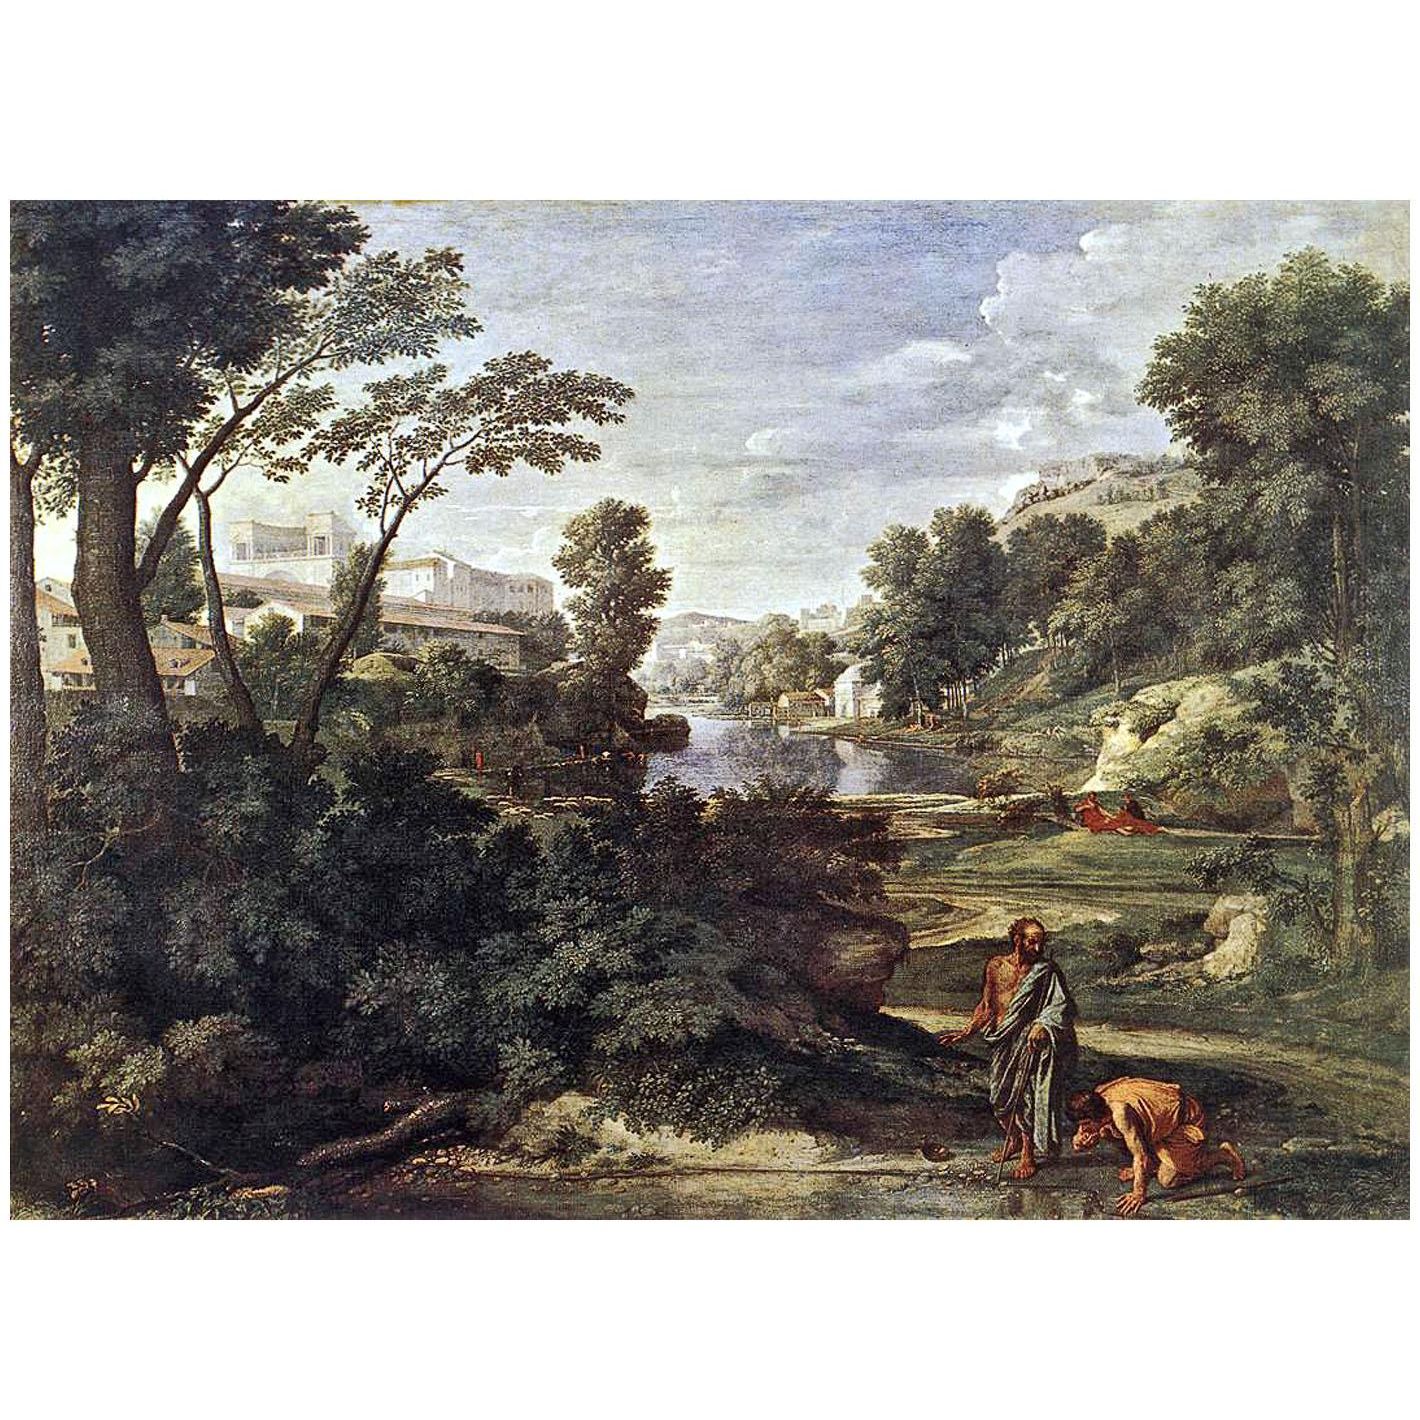 Nicolas Poussin. Diogène jetant son écuelle. 1648. Musee du Louvre